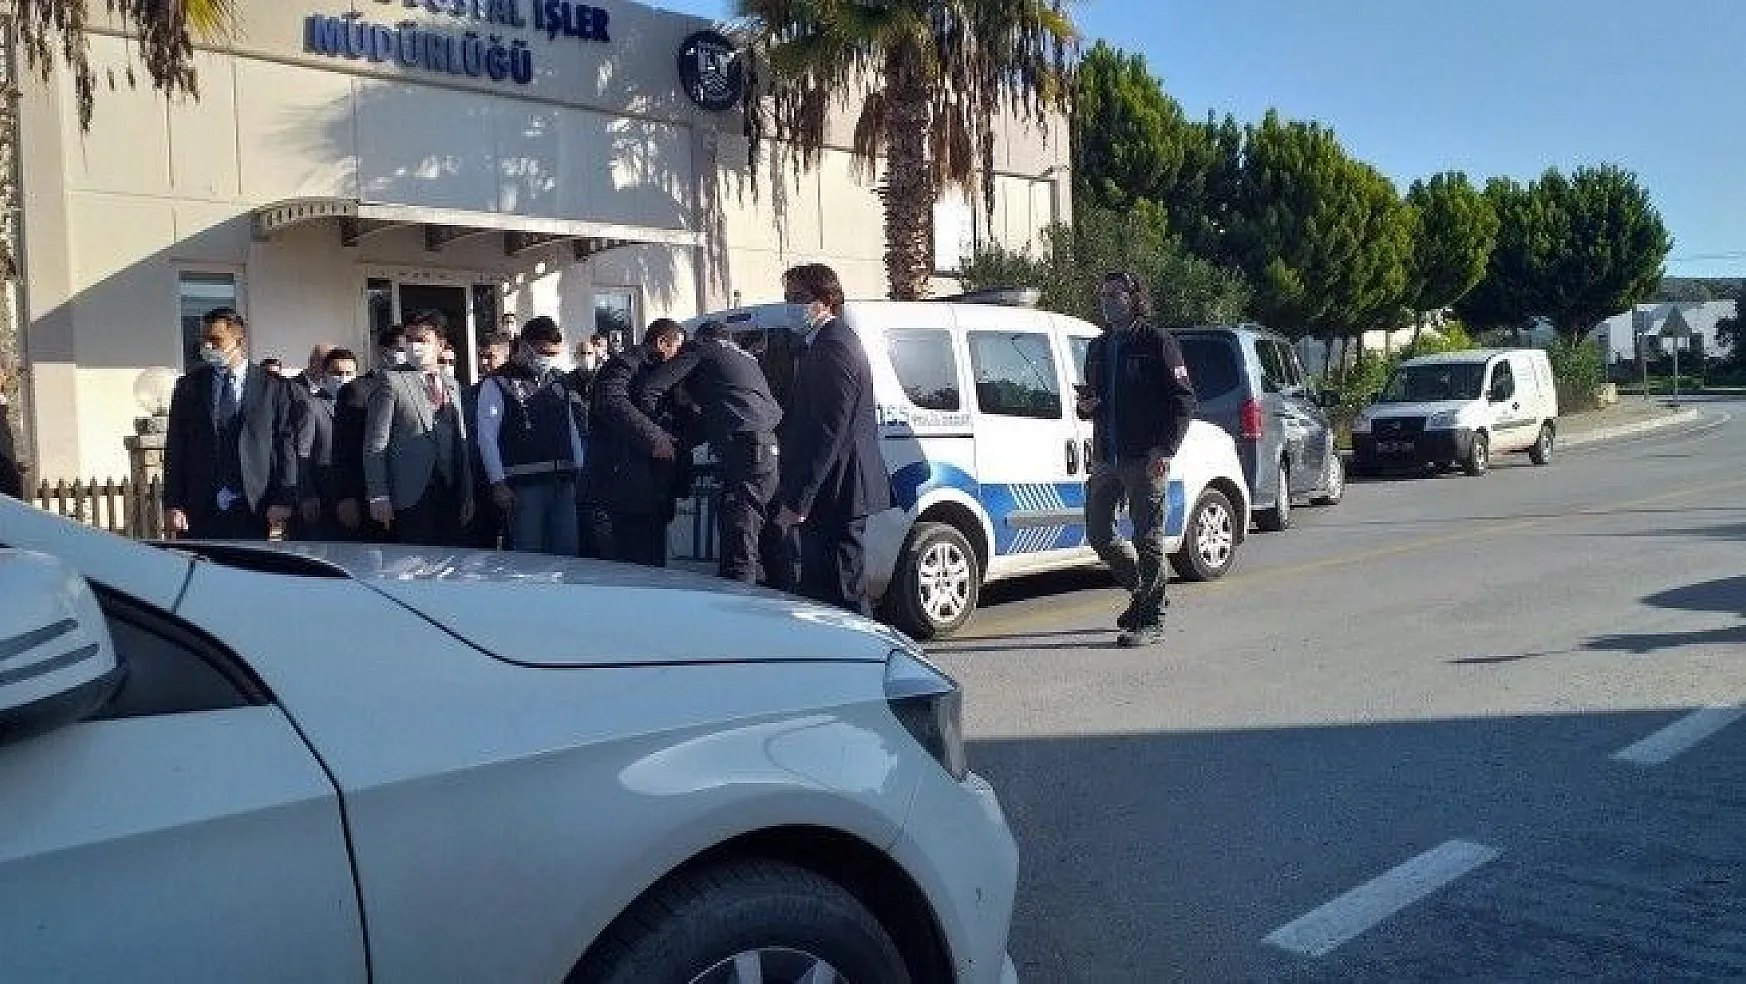 Bodrum Belediye Başkan Yardımcısına bıçaklı saldırı